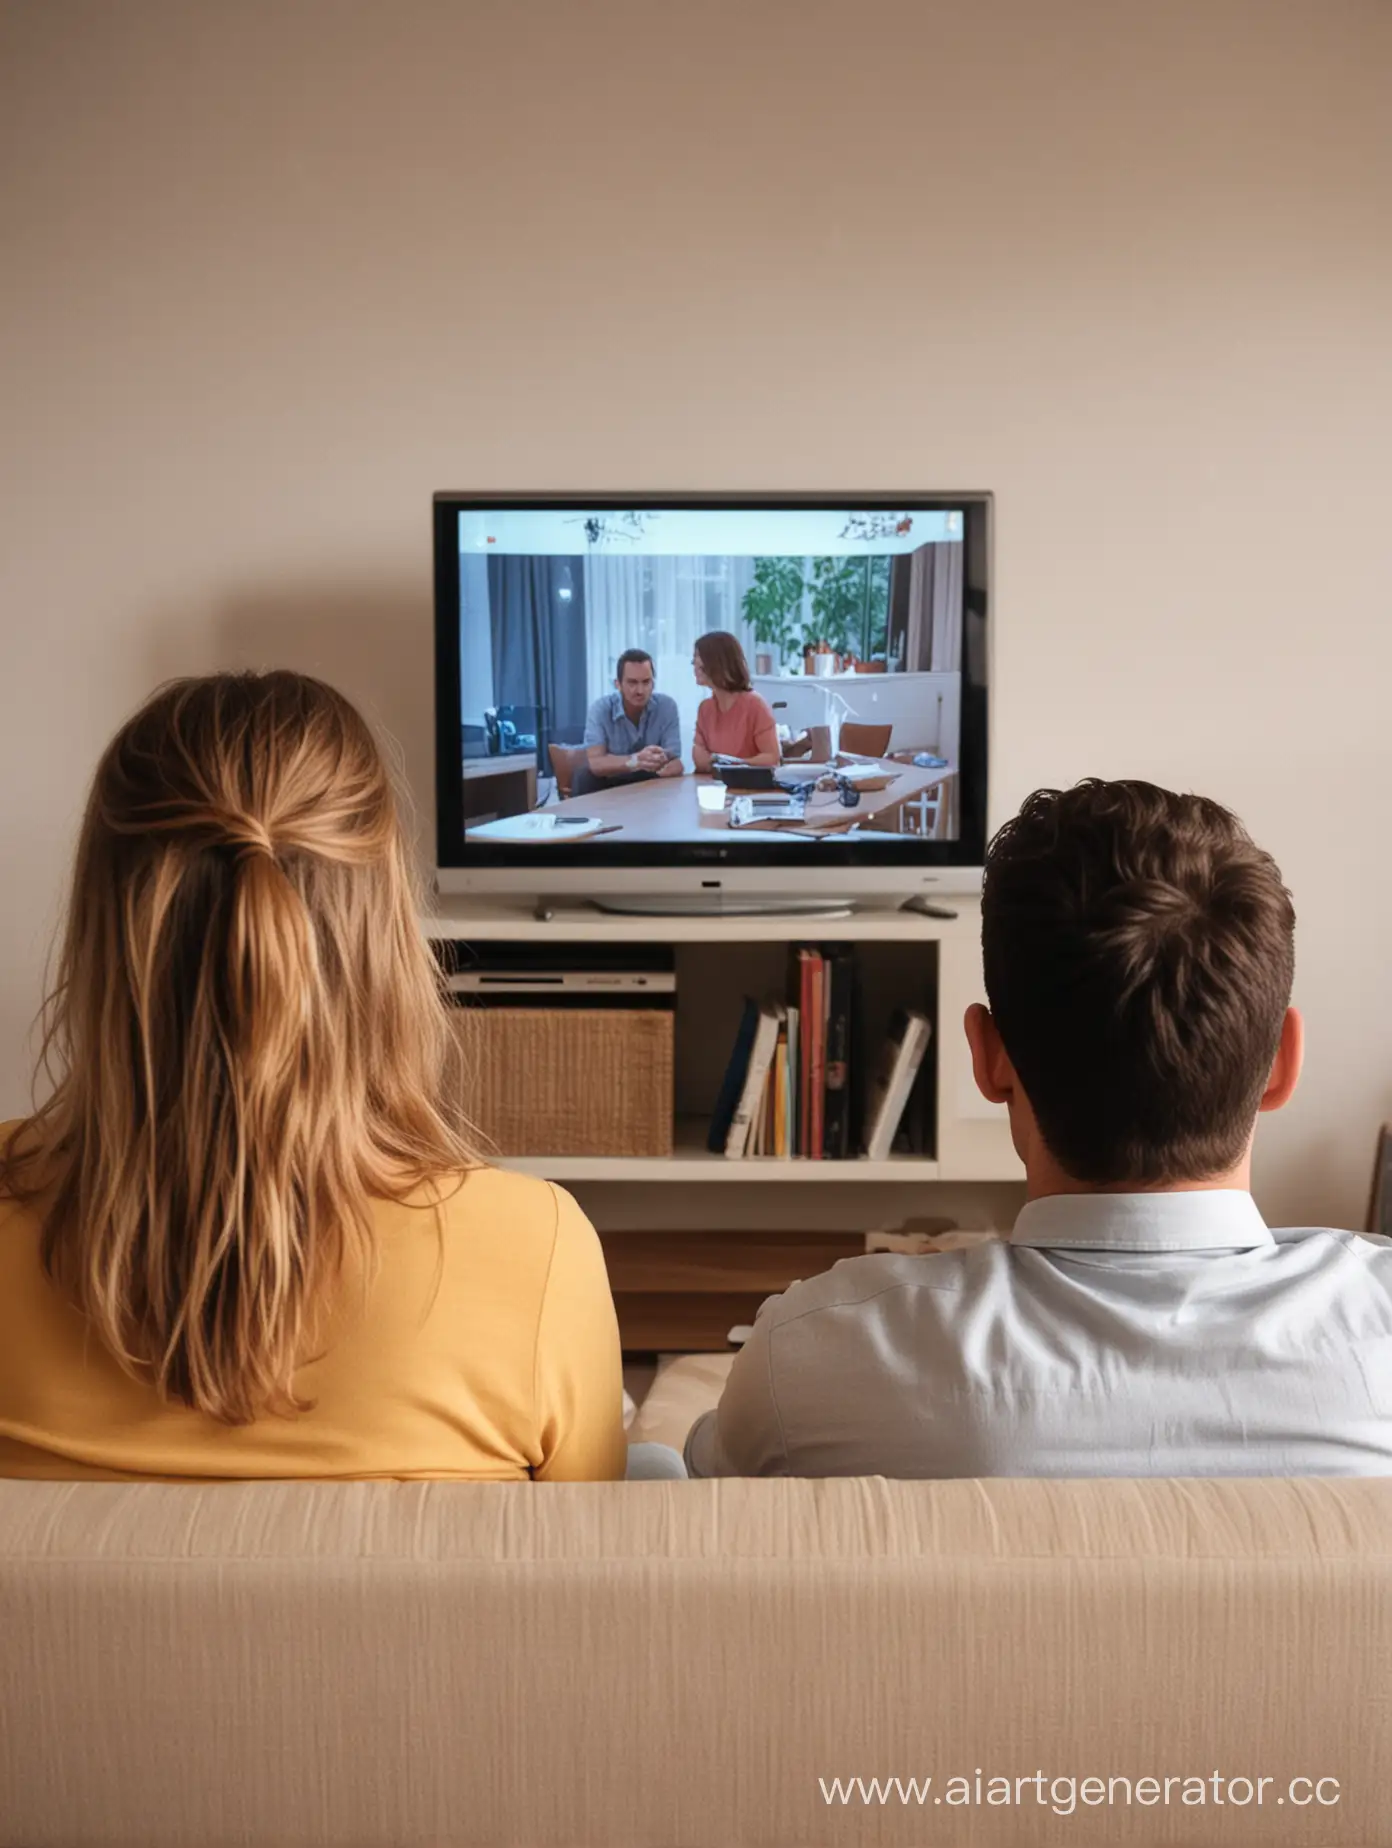 мужчина и женщина смотрят телевизор со спины